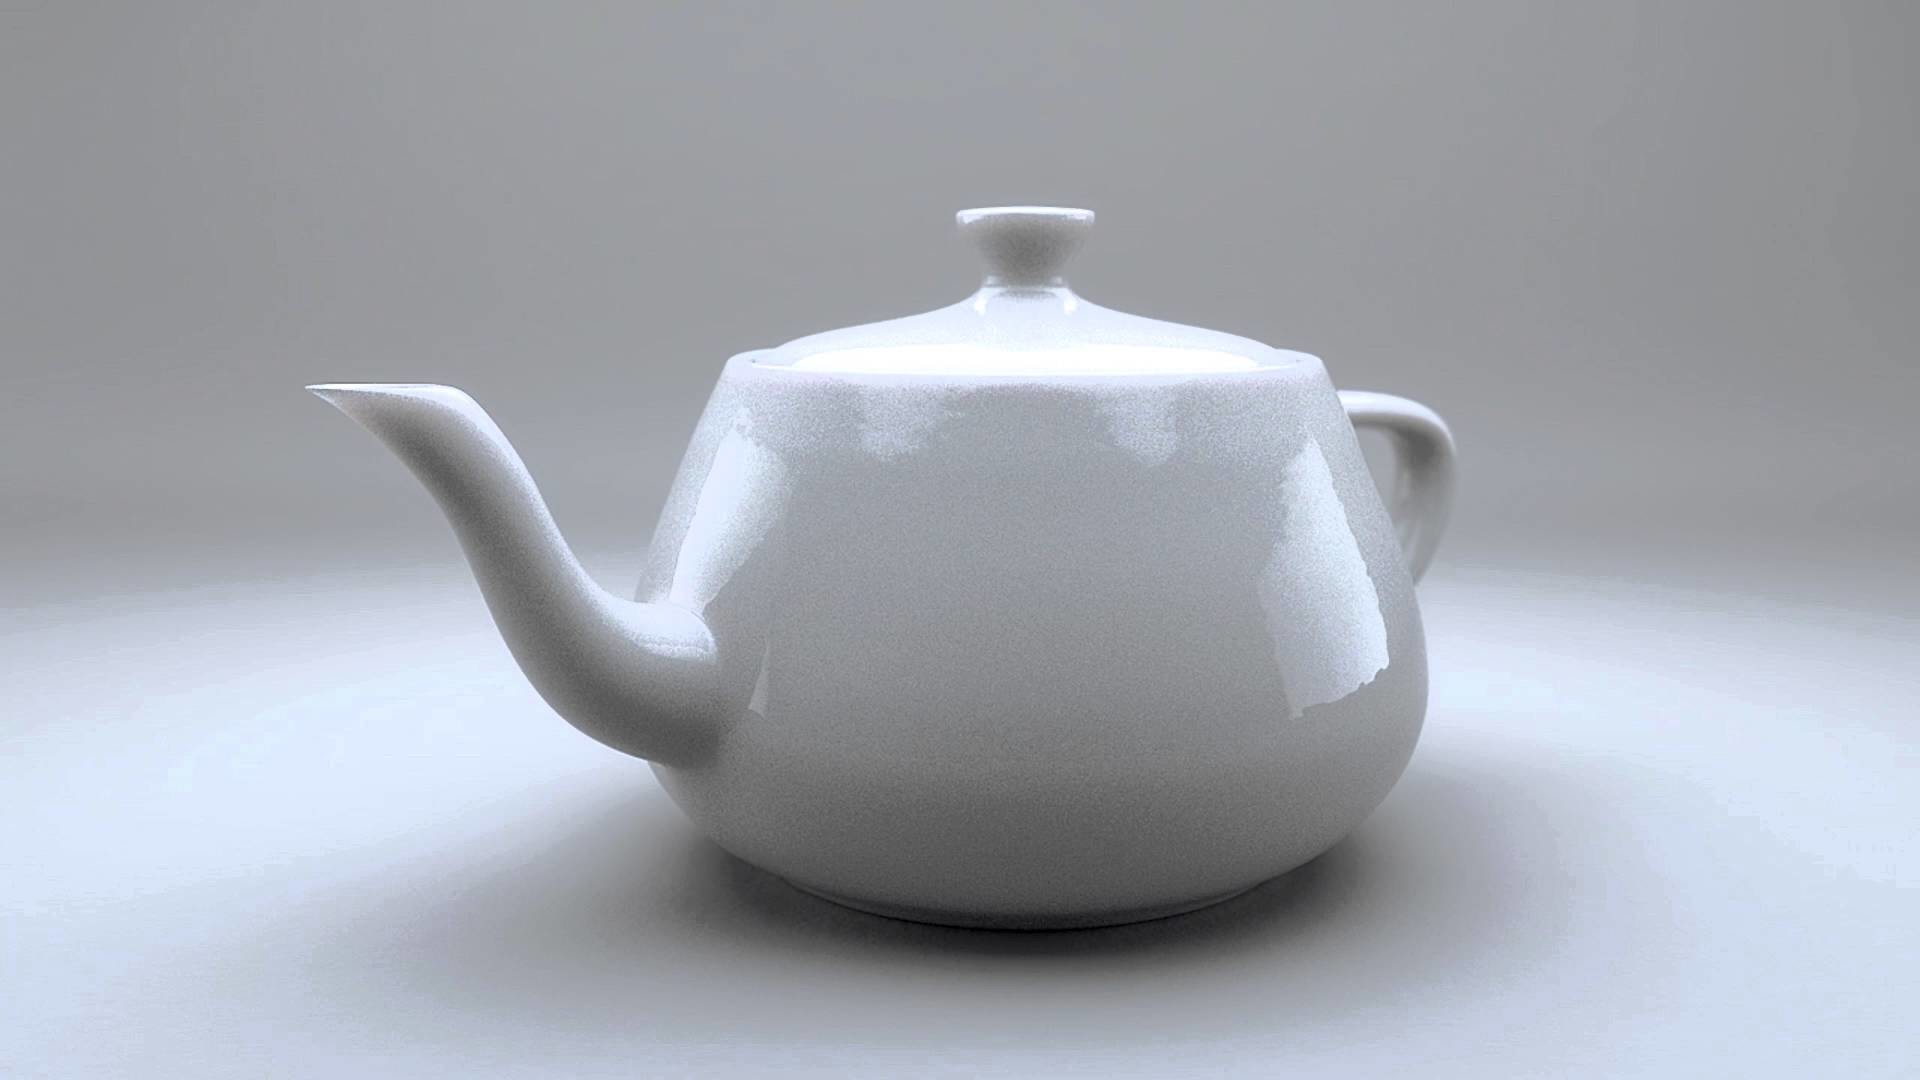 1920x1080 The Utah Teapot